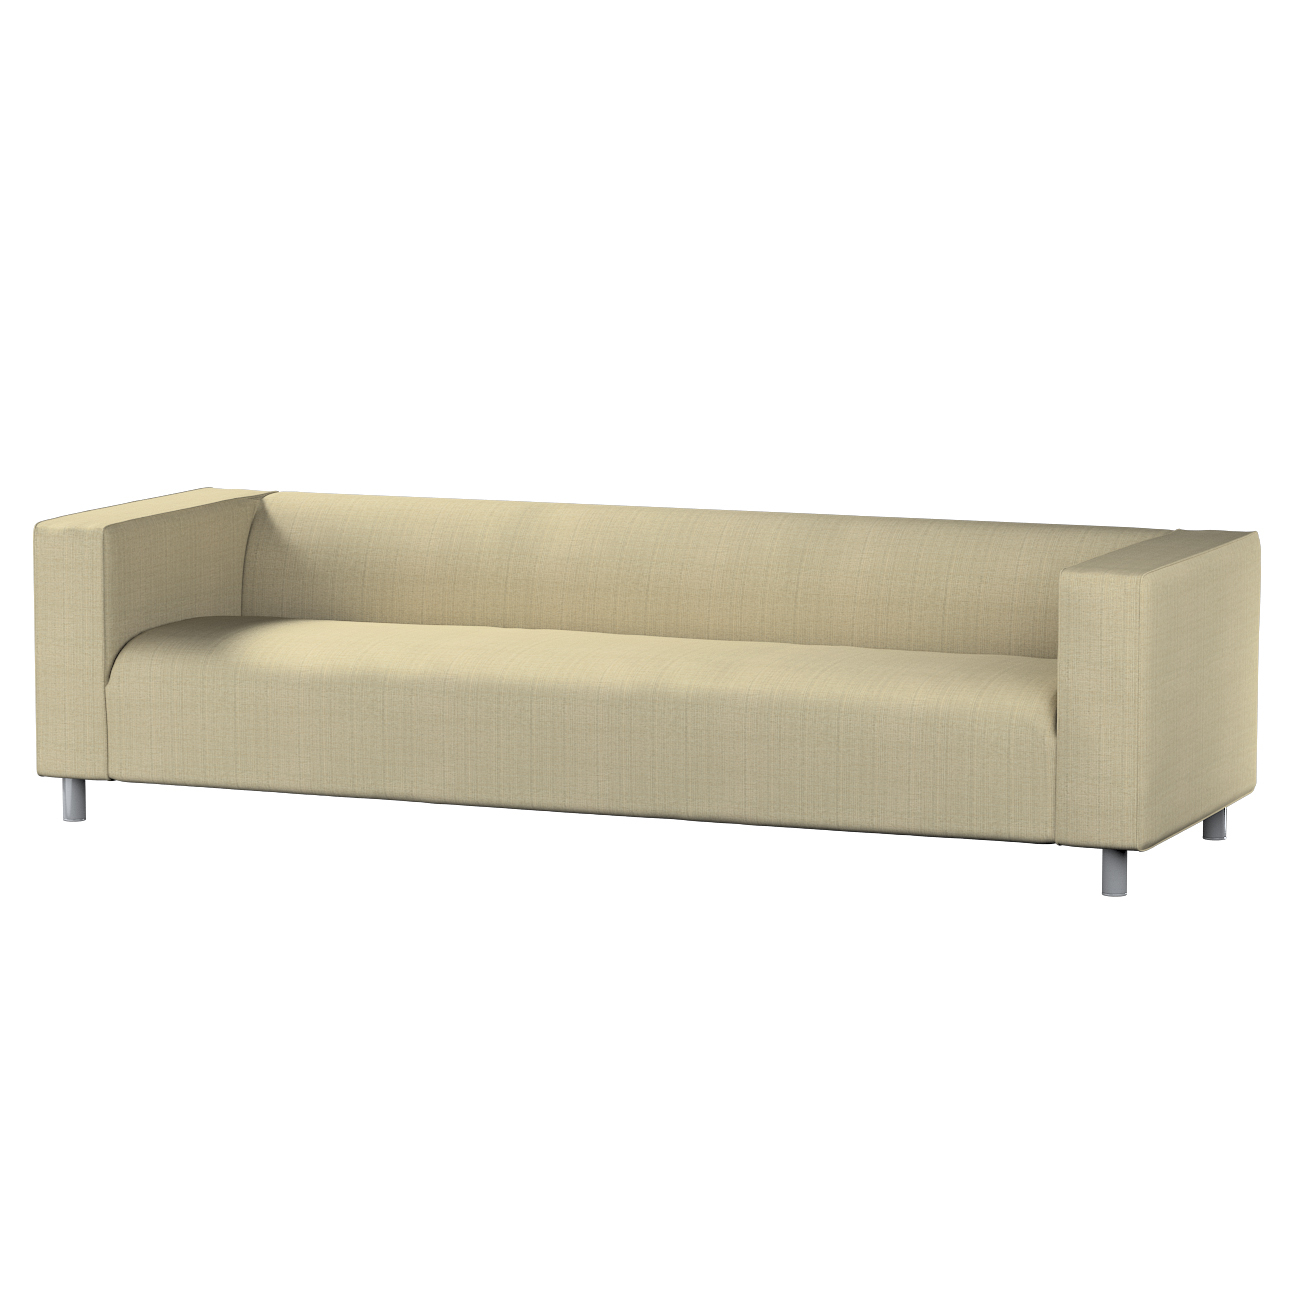 Bezug für Klippan 4-Sitzer Sofa, beige-creme, Bezug für Klippan 4-Sitzer, L günstig online kaufen